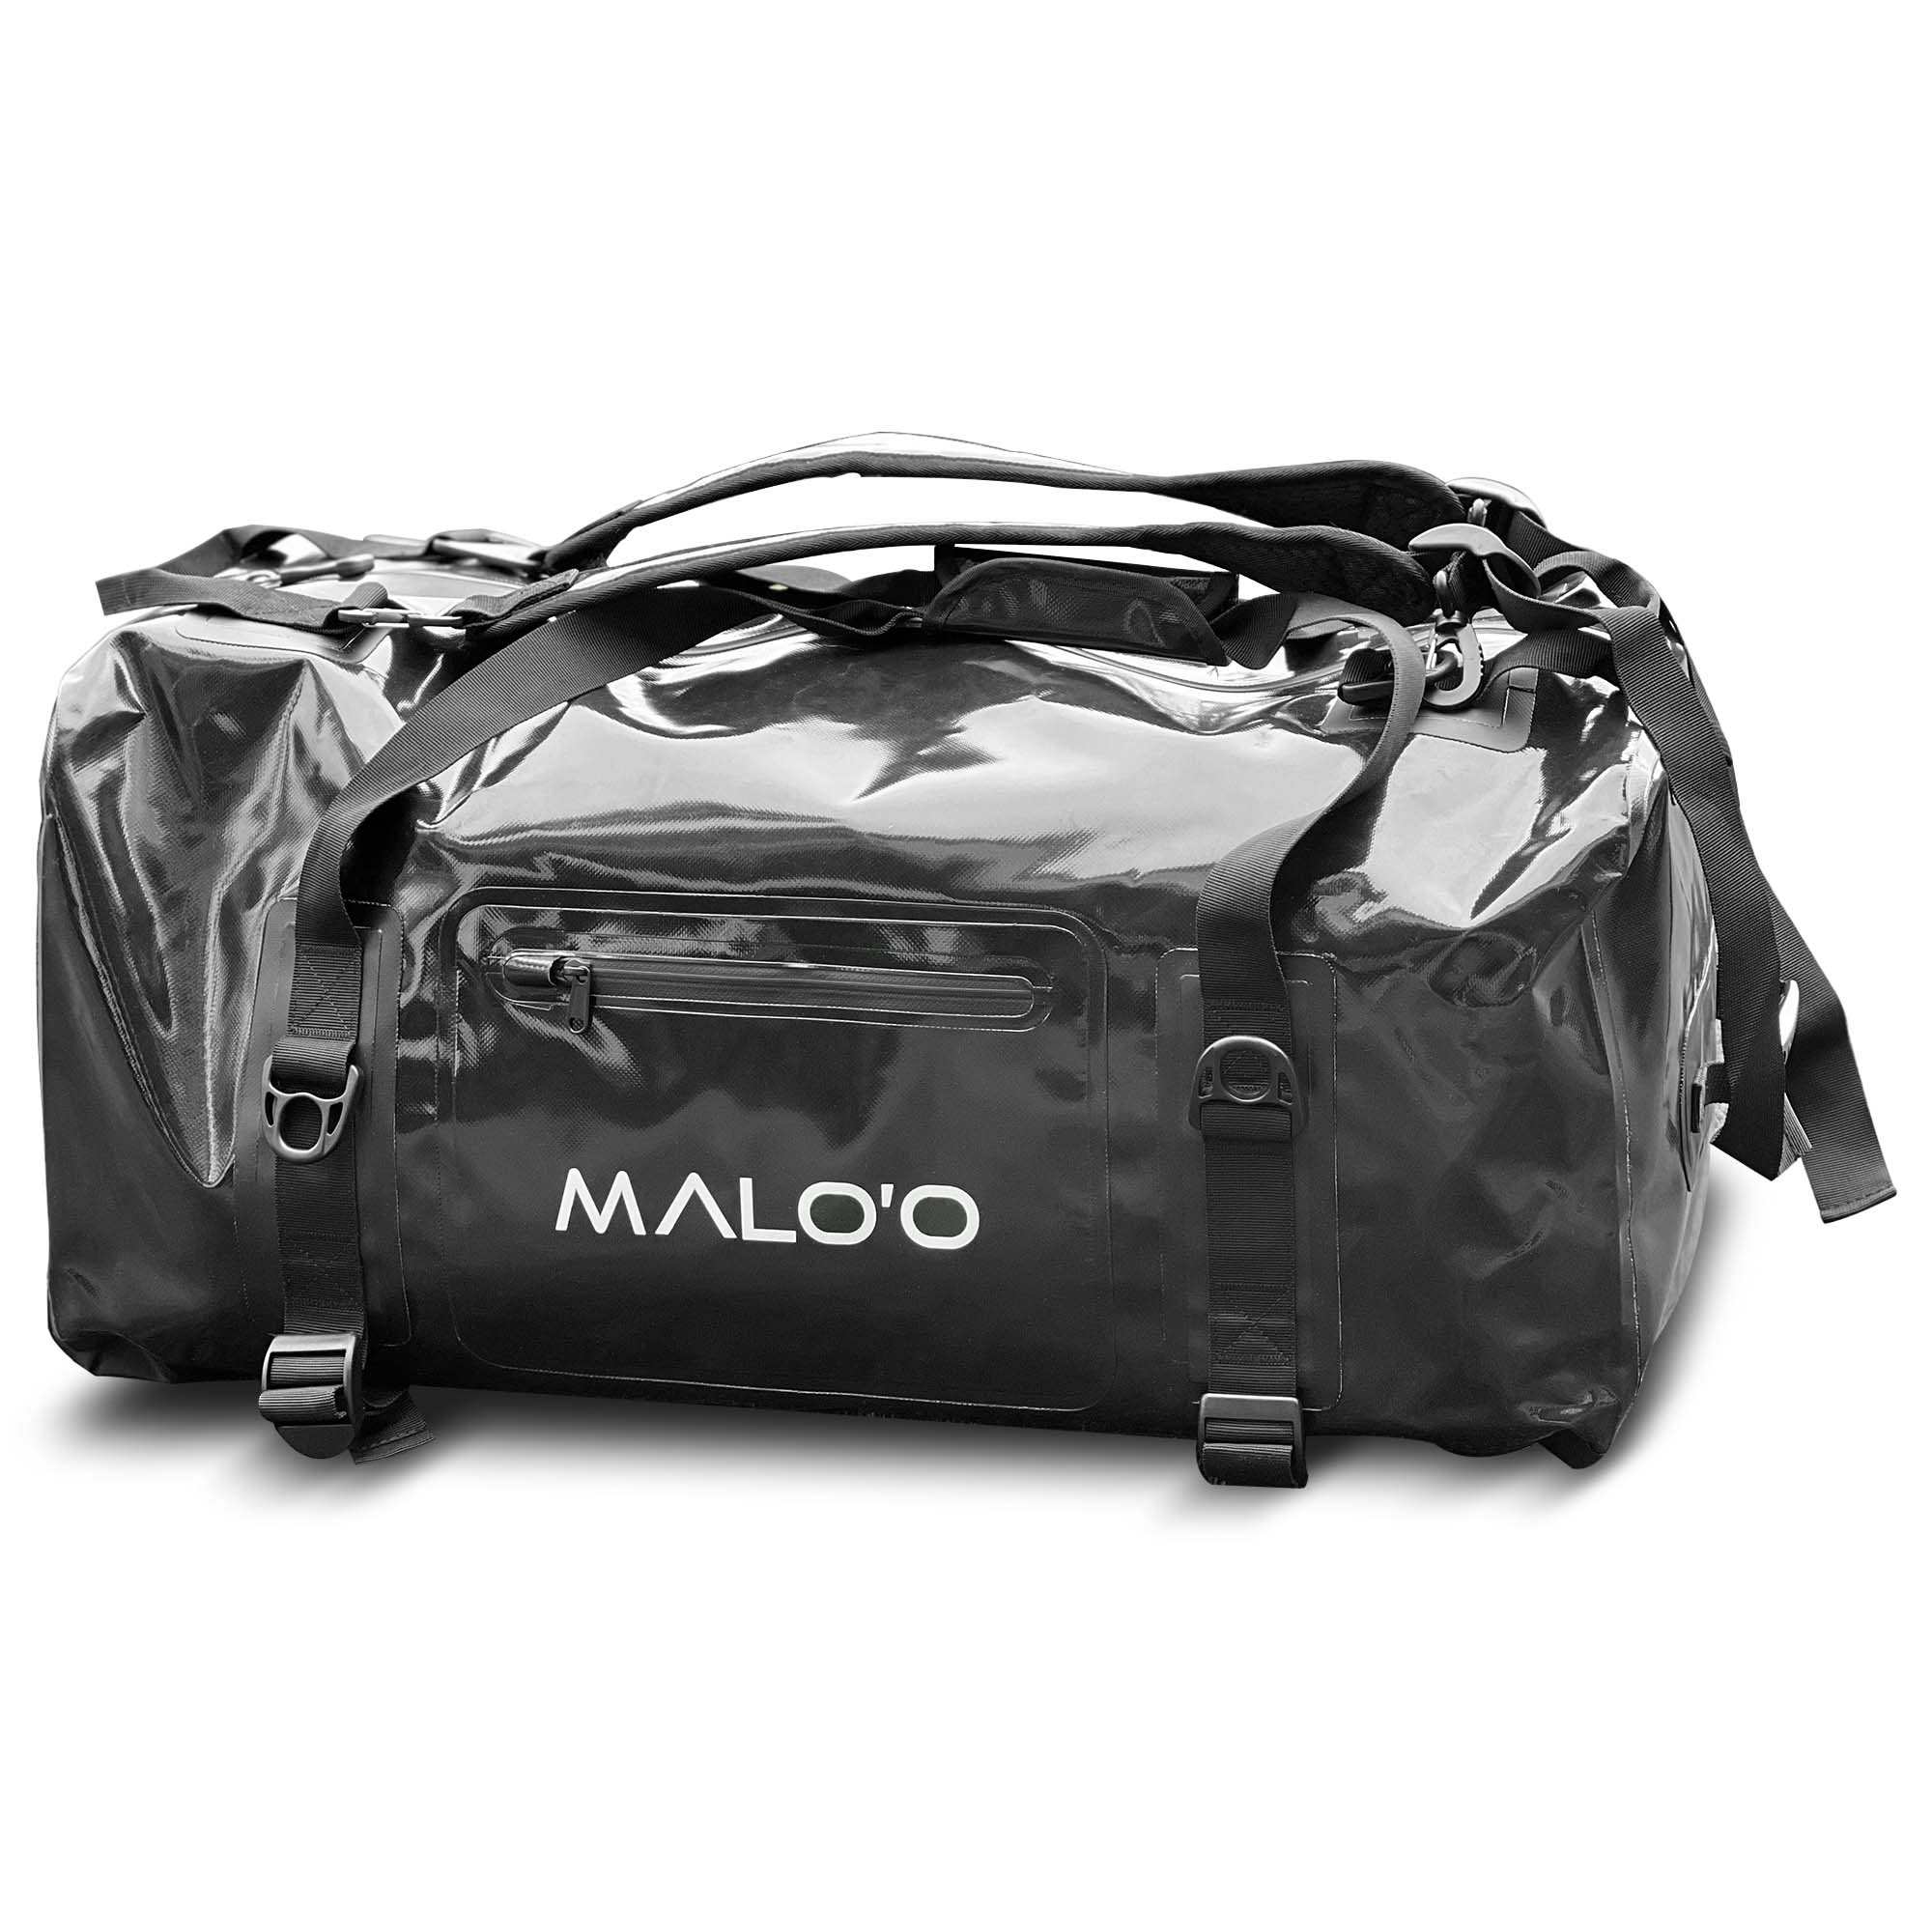 Malo&#39;o Racks Black Malo&#39;o DryPack Waterproof Backpack Duffle - 90L